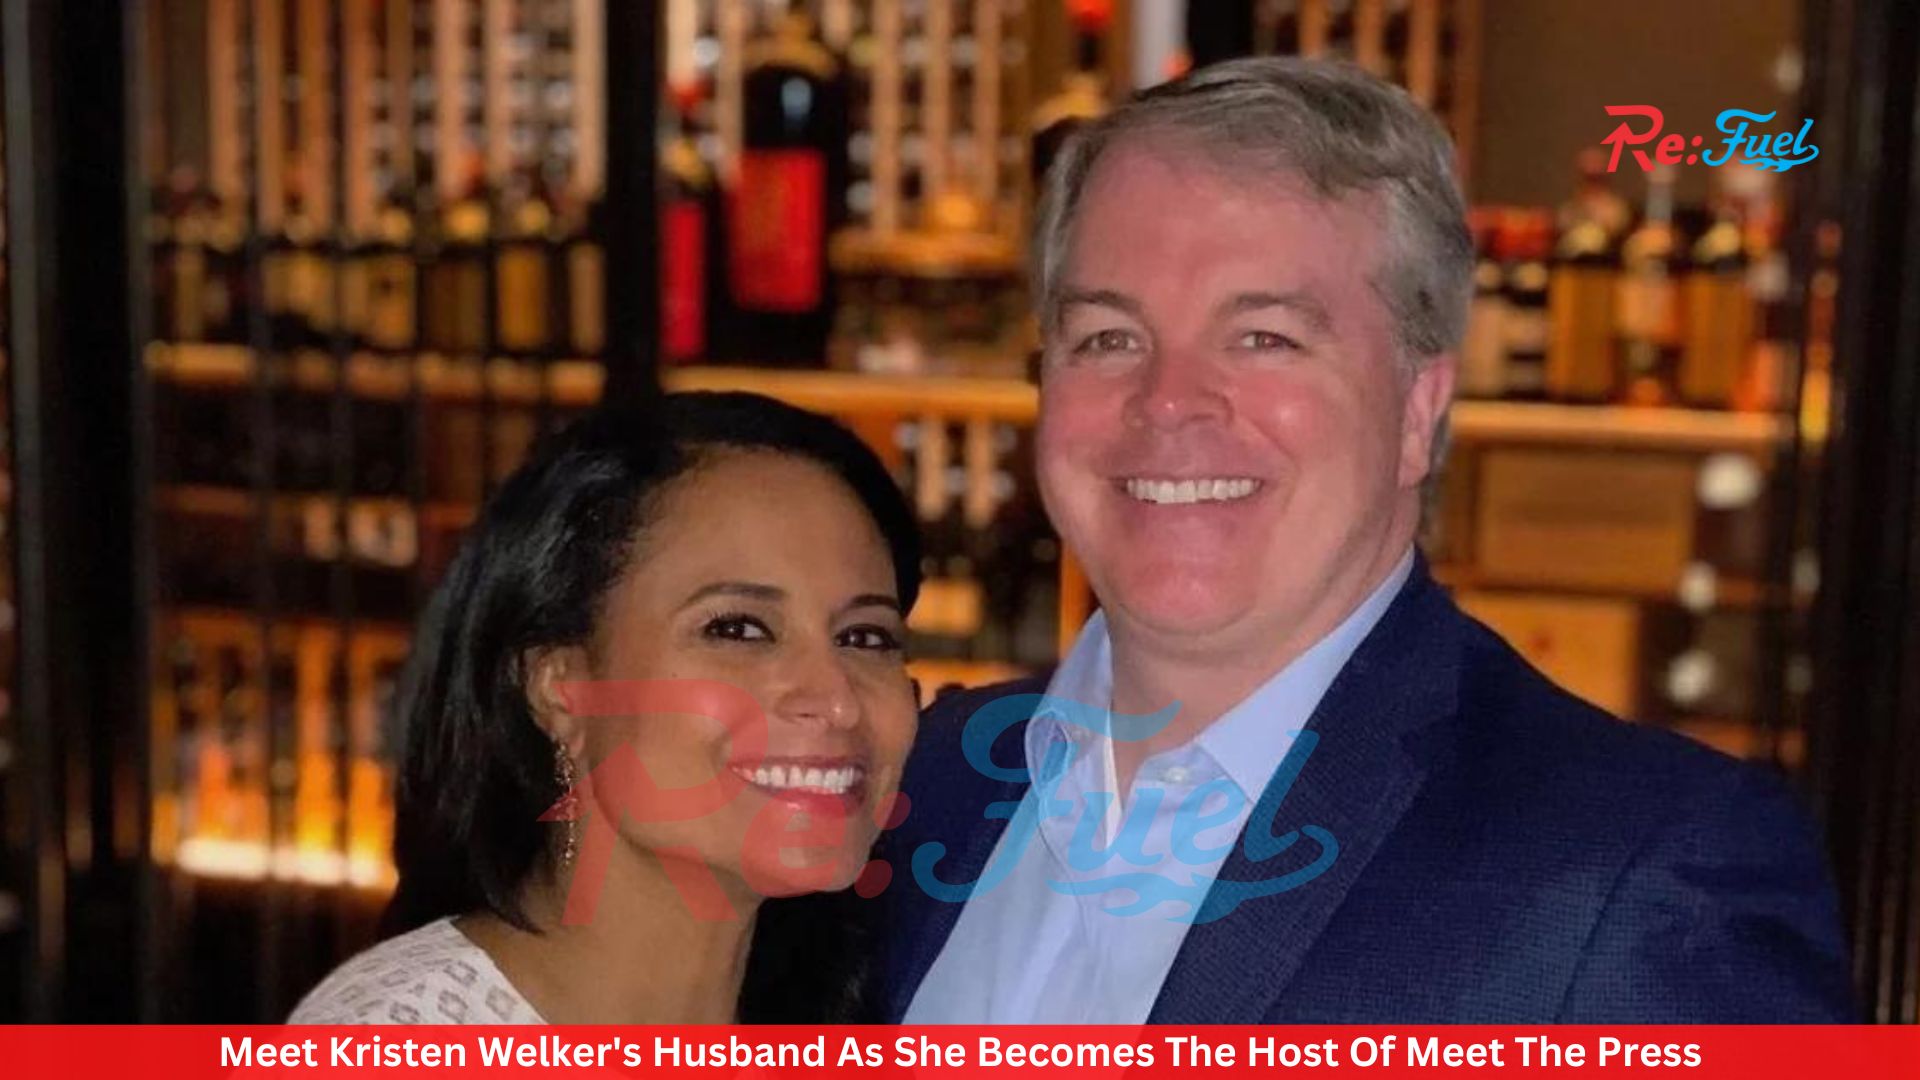 Meet Kristen Welker's Husband As She Becomes The Host Of Meet The Press